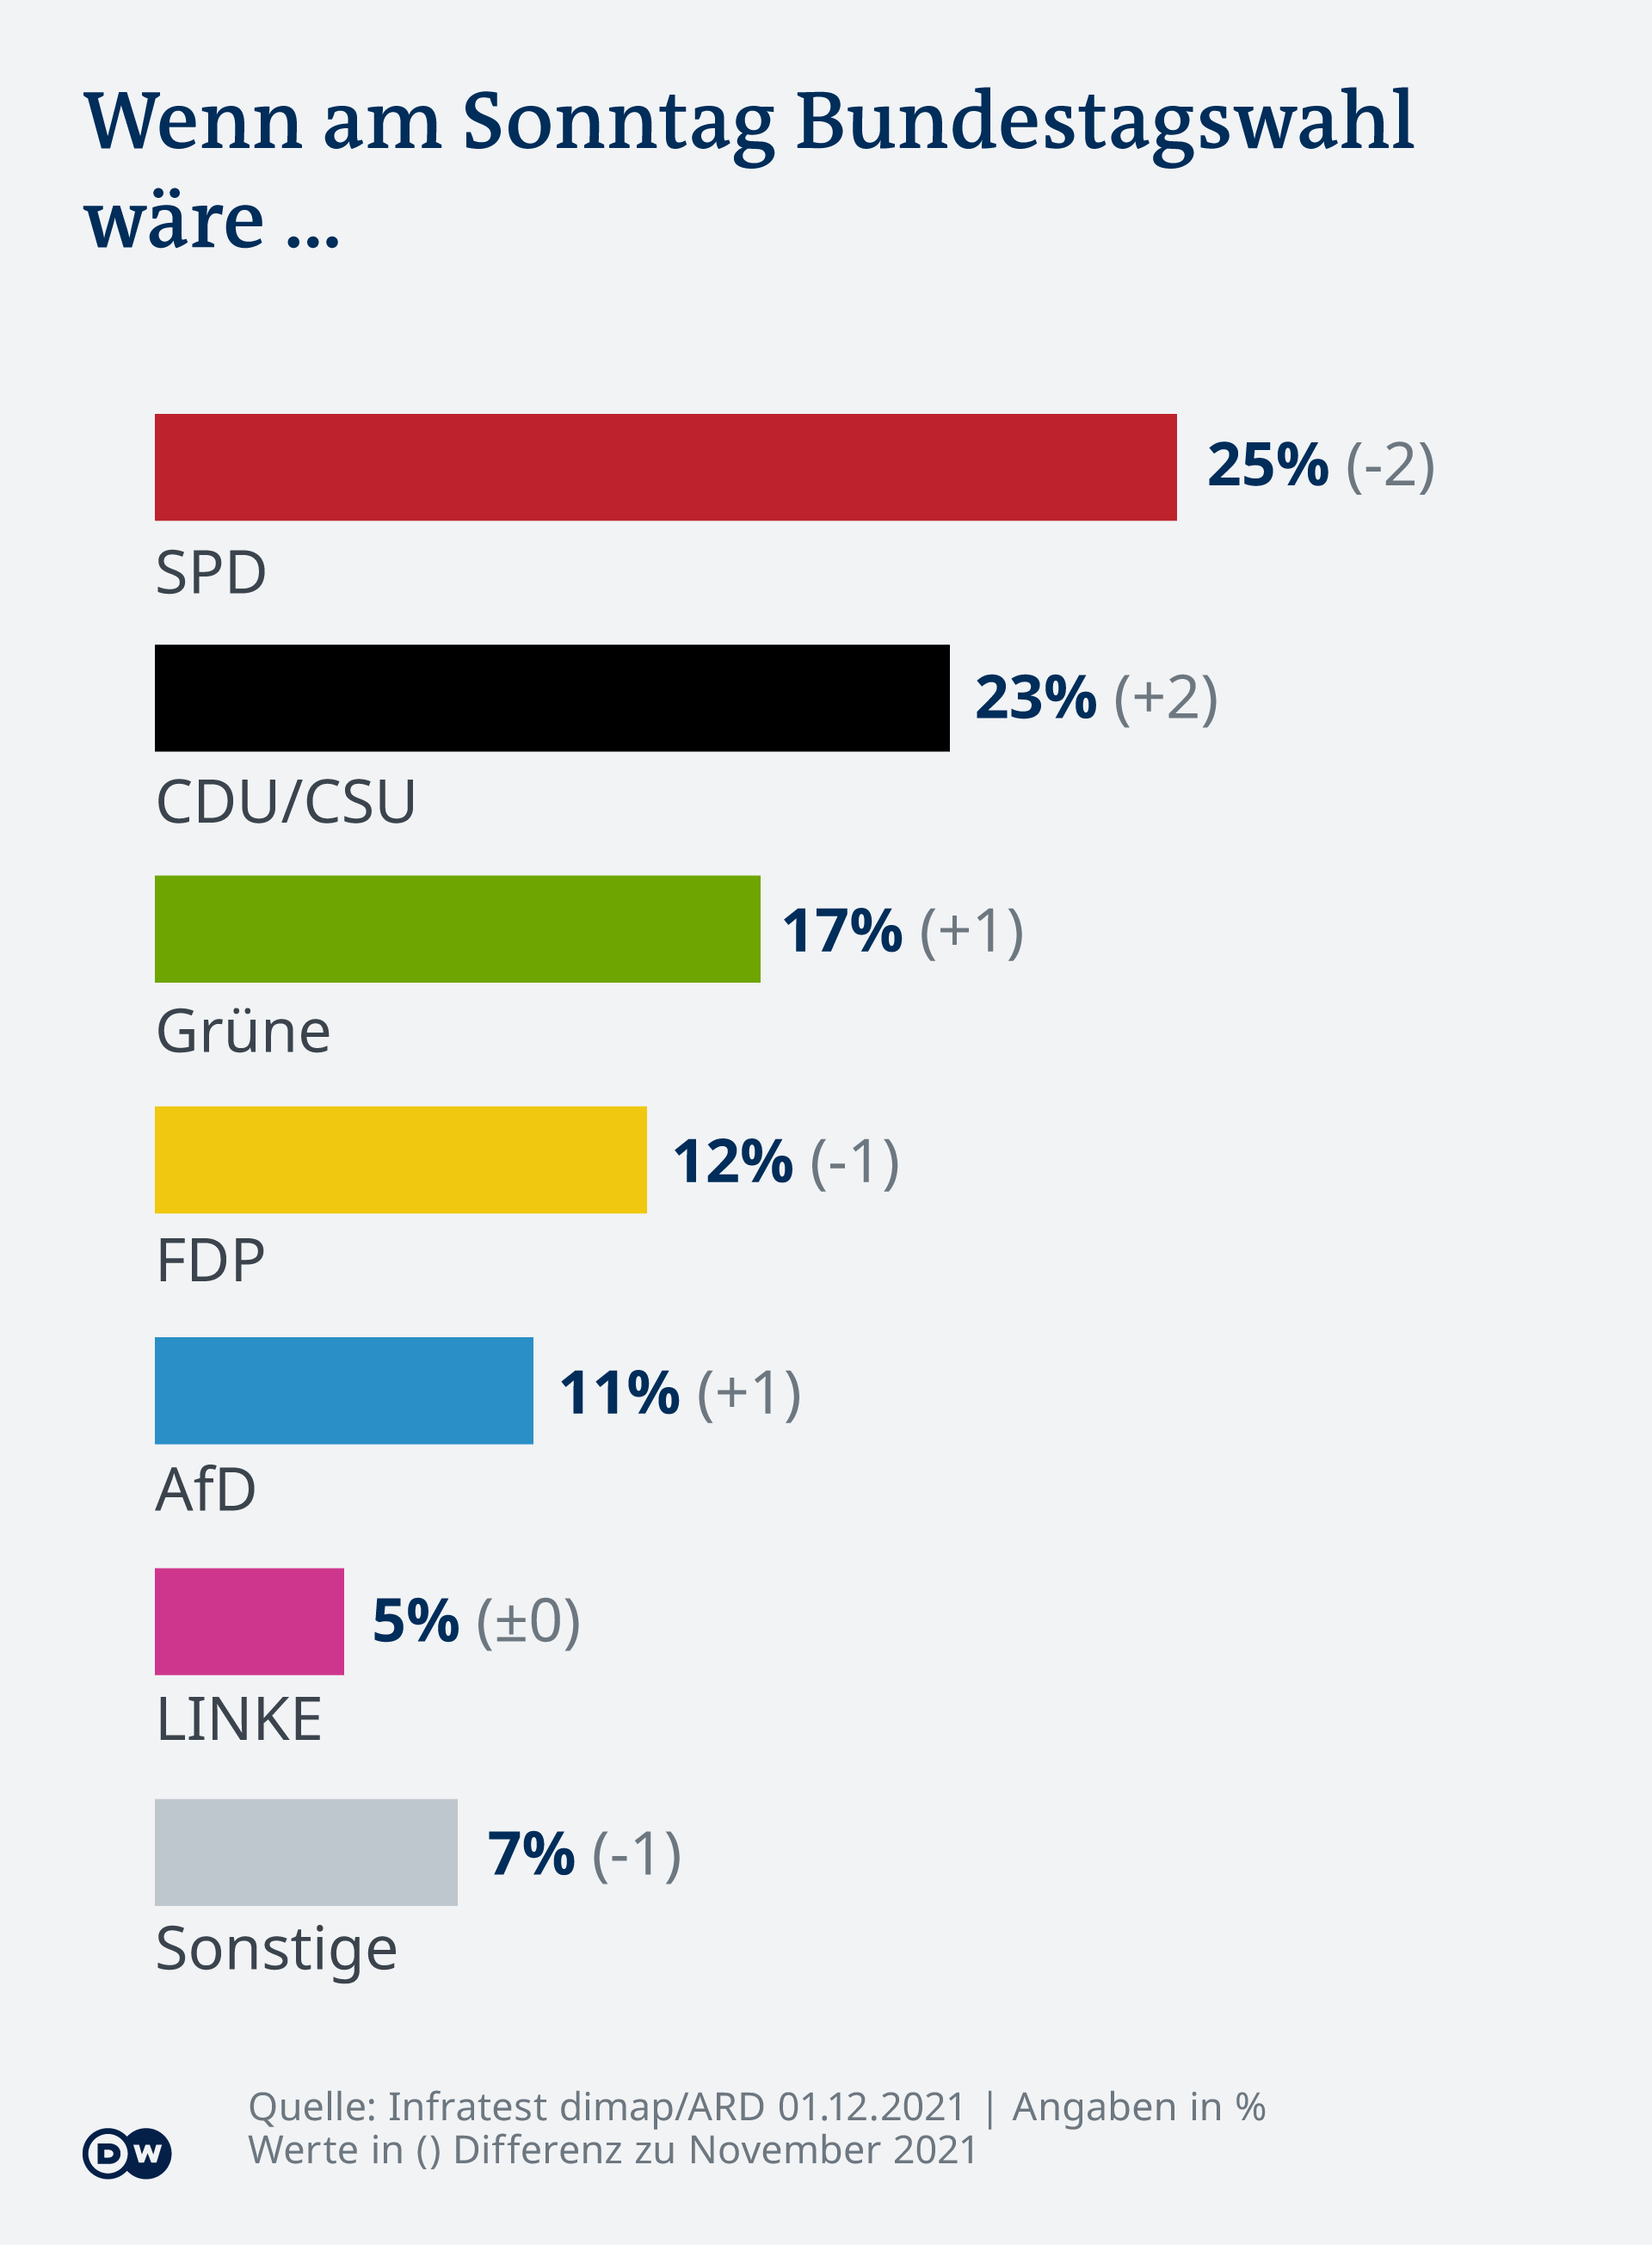 Nemačka bi ovako glasala da su ove nedelje izbori